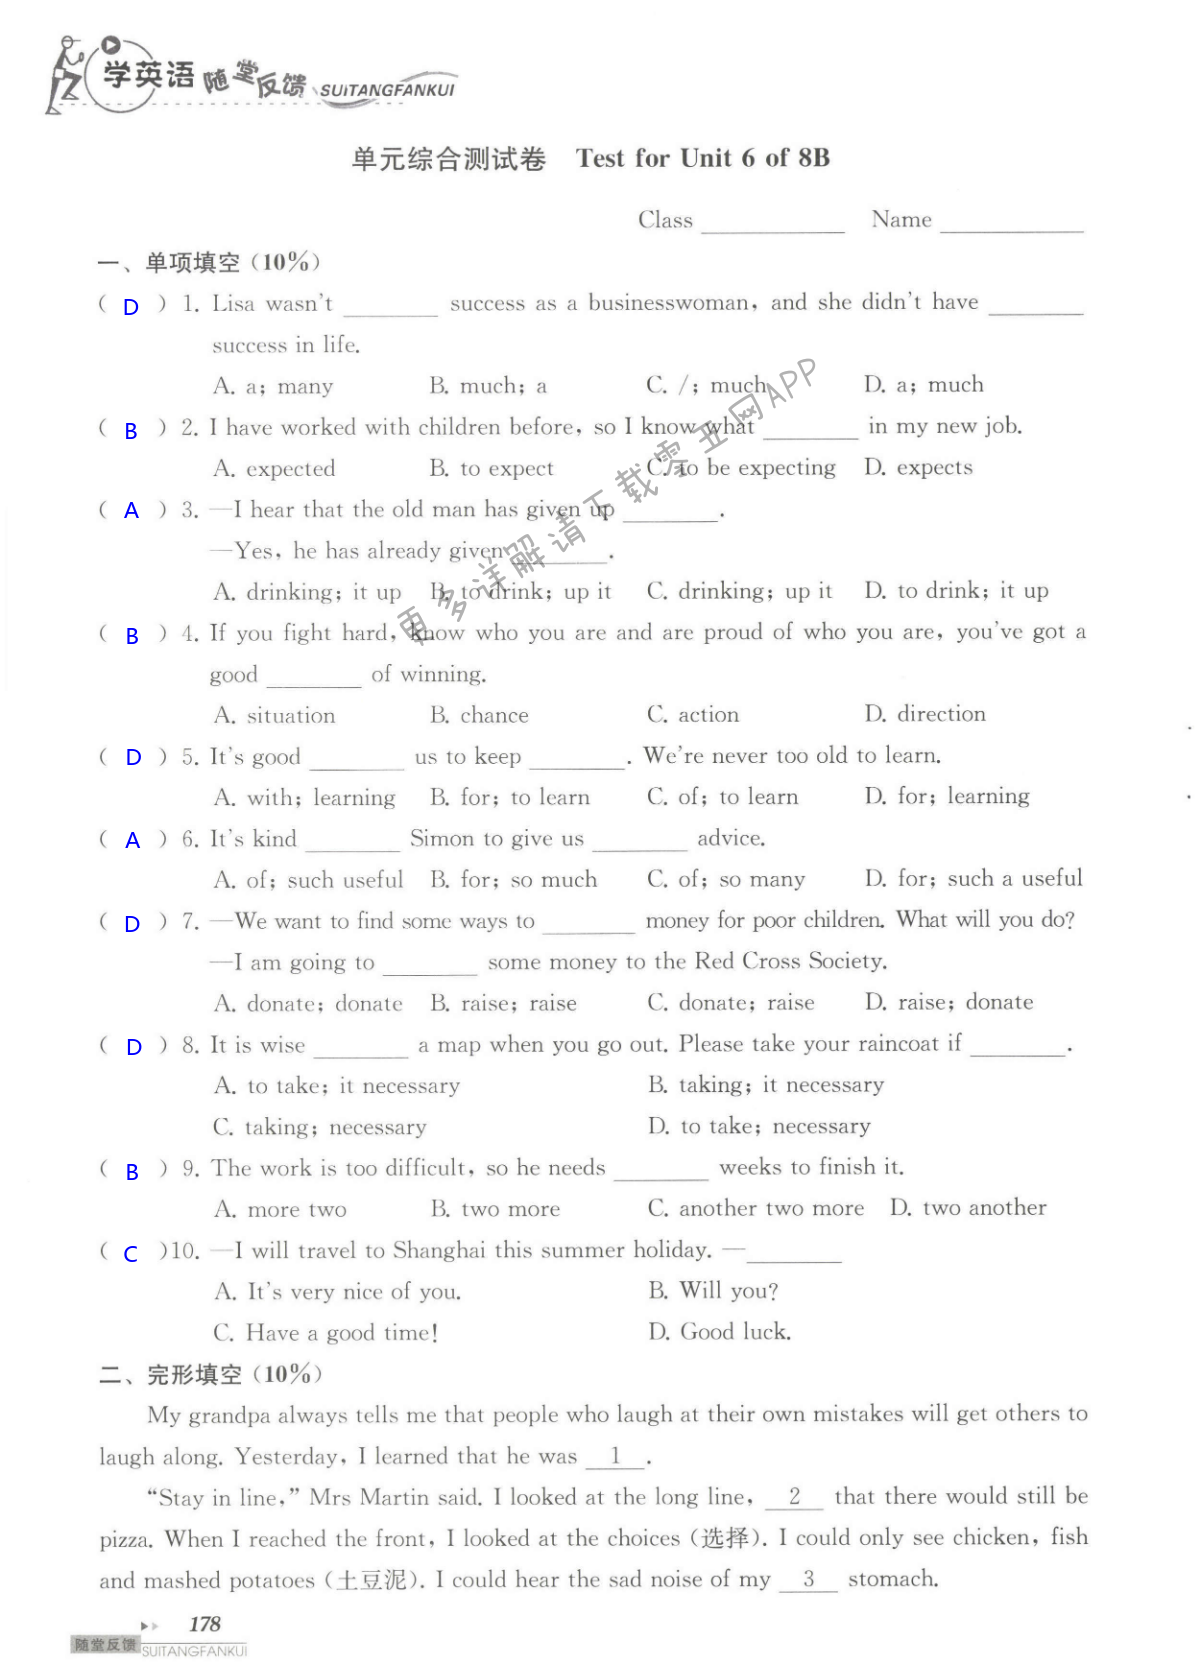 单元综合测试卷   Test for Unit 6 of 8B - 第178页